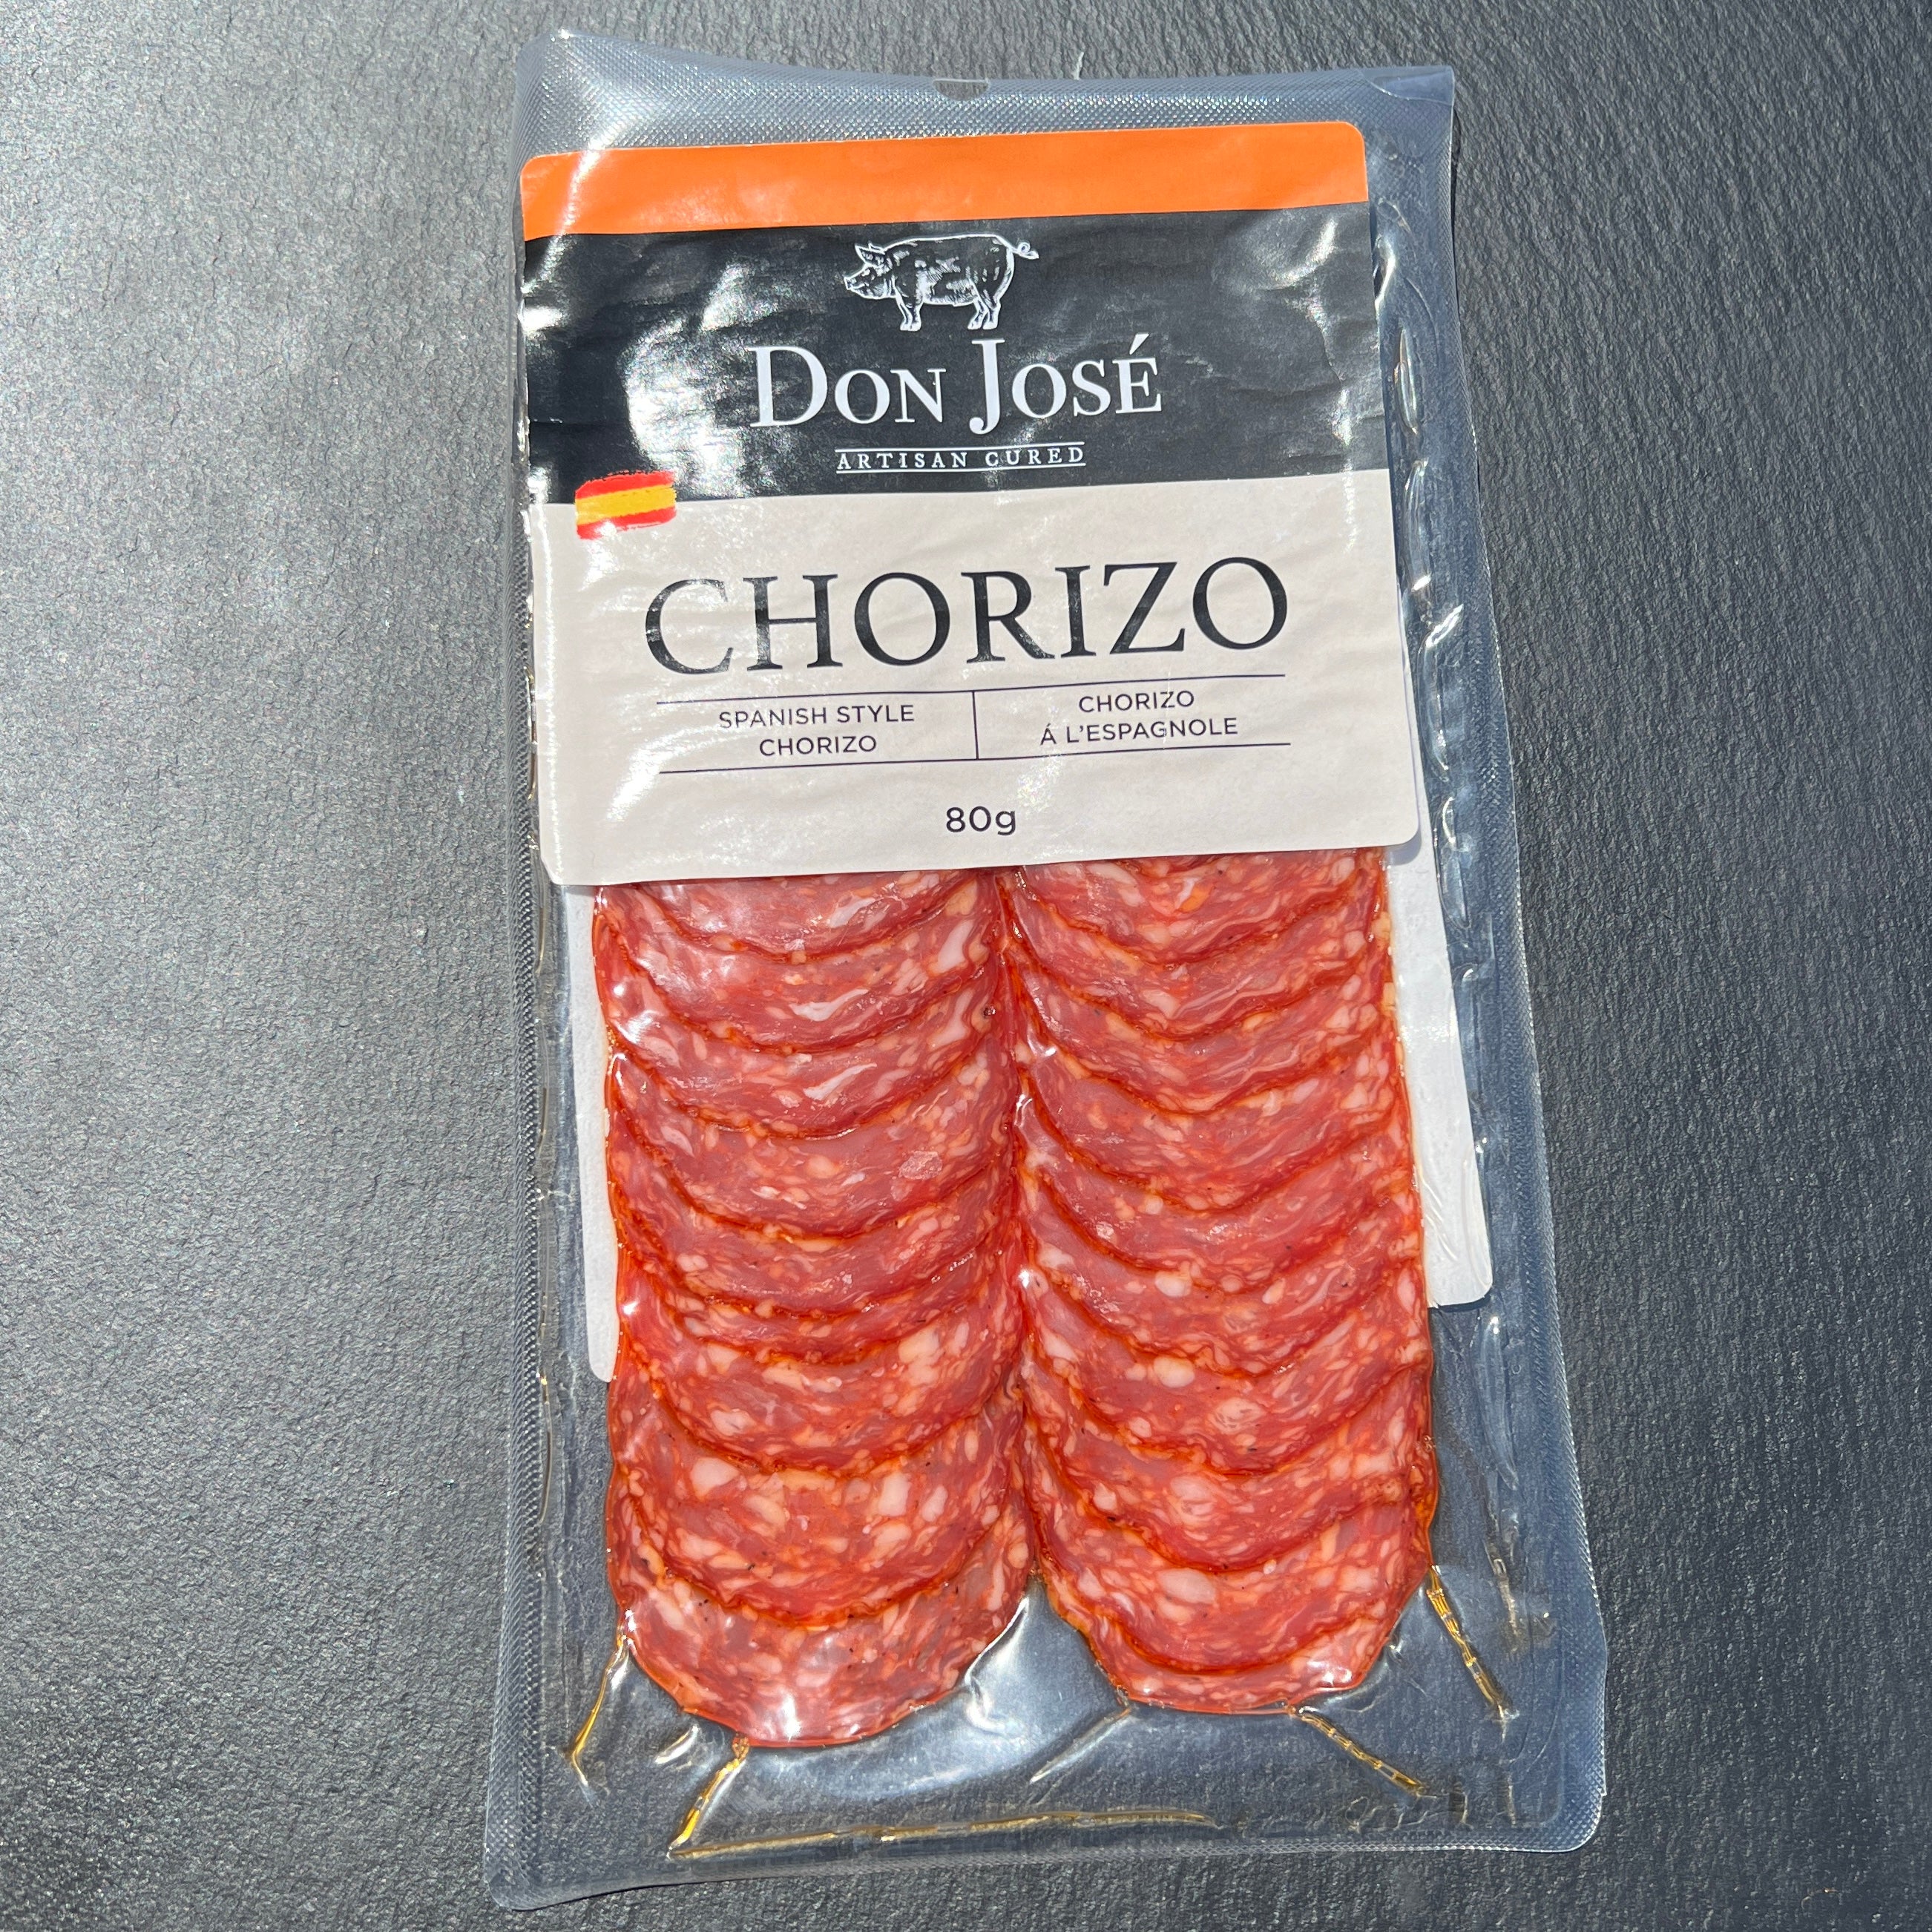 "Don Jose" Chorizo